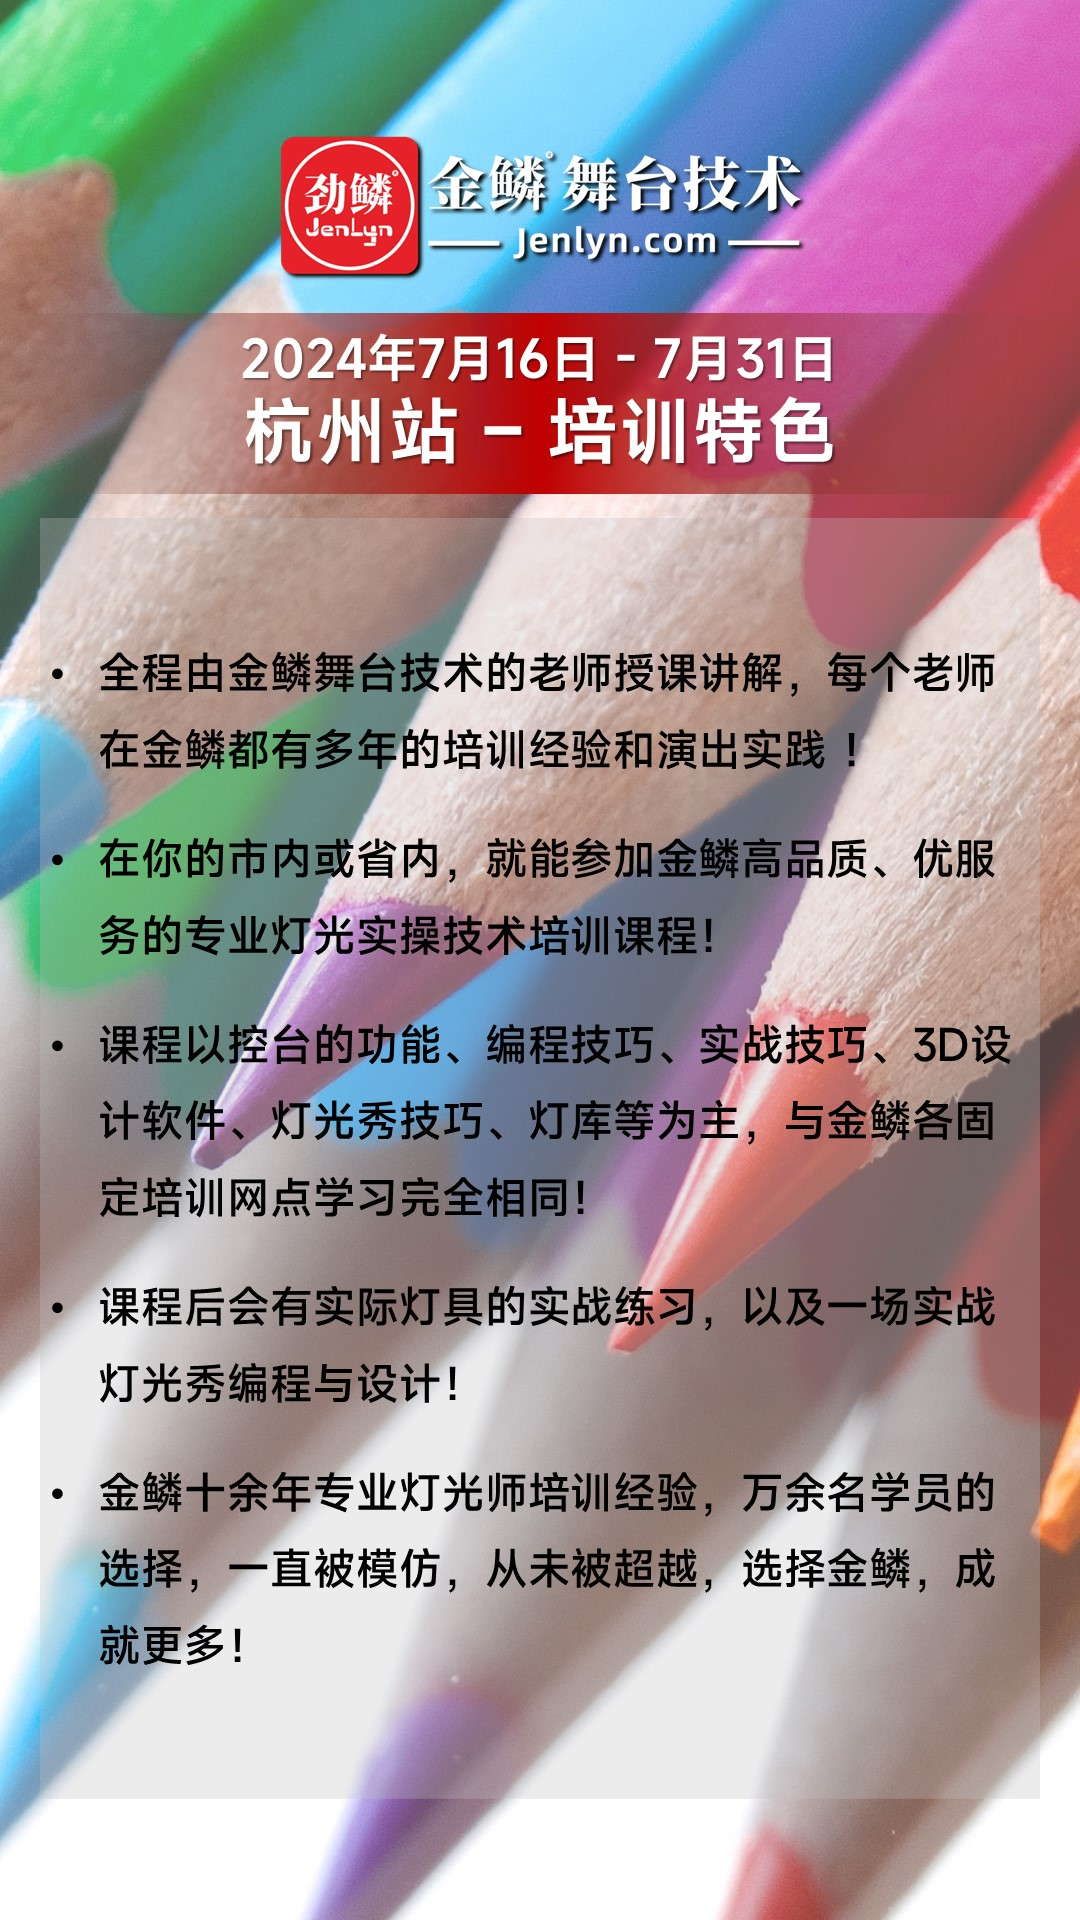 2024年7月份“杭州站”MA2控台高级实操技术培训班启动